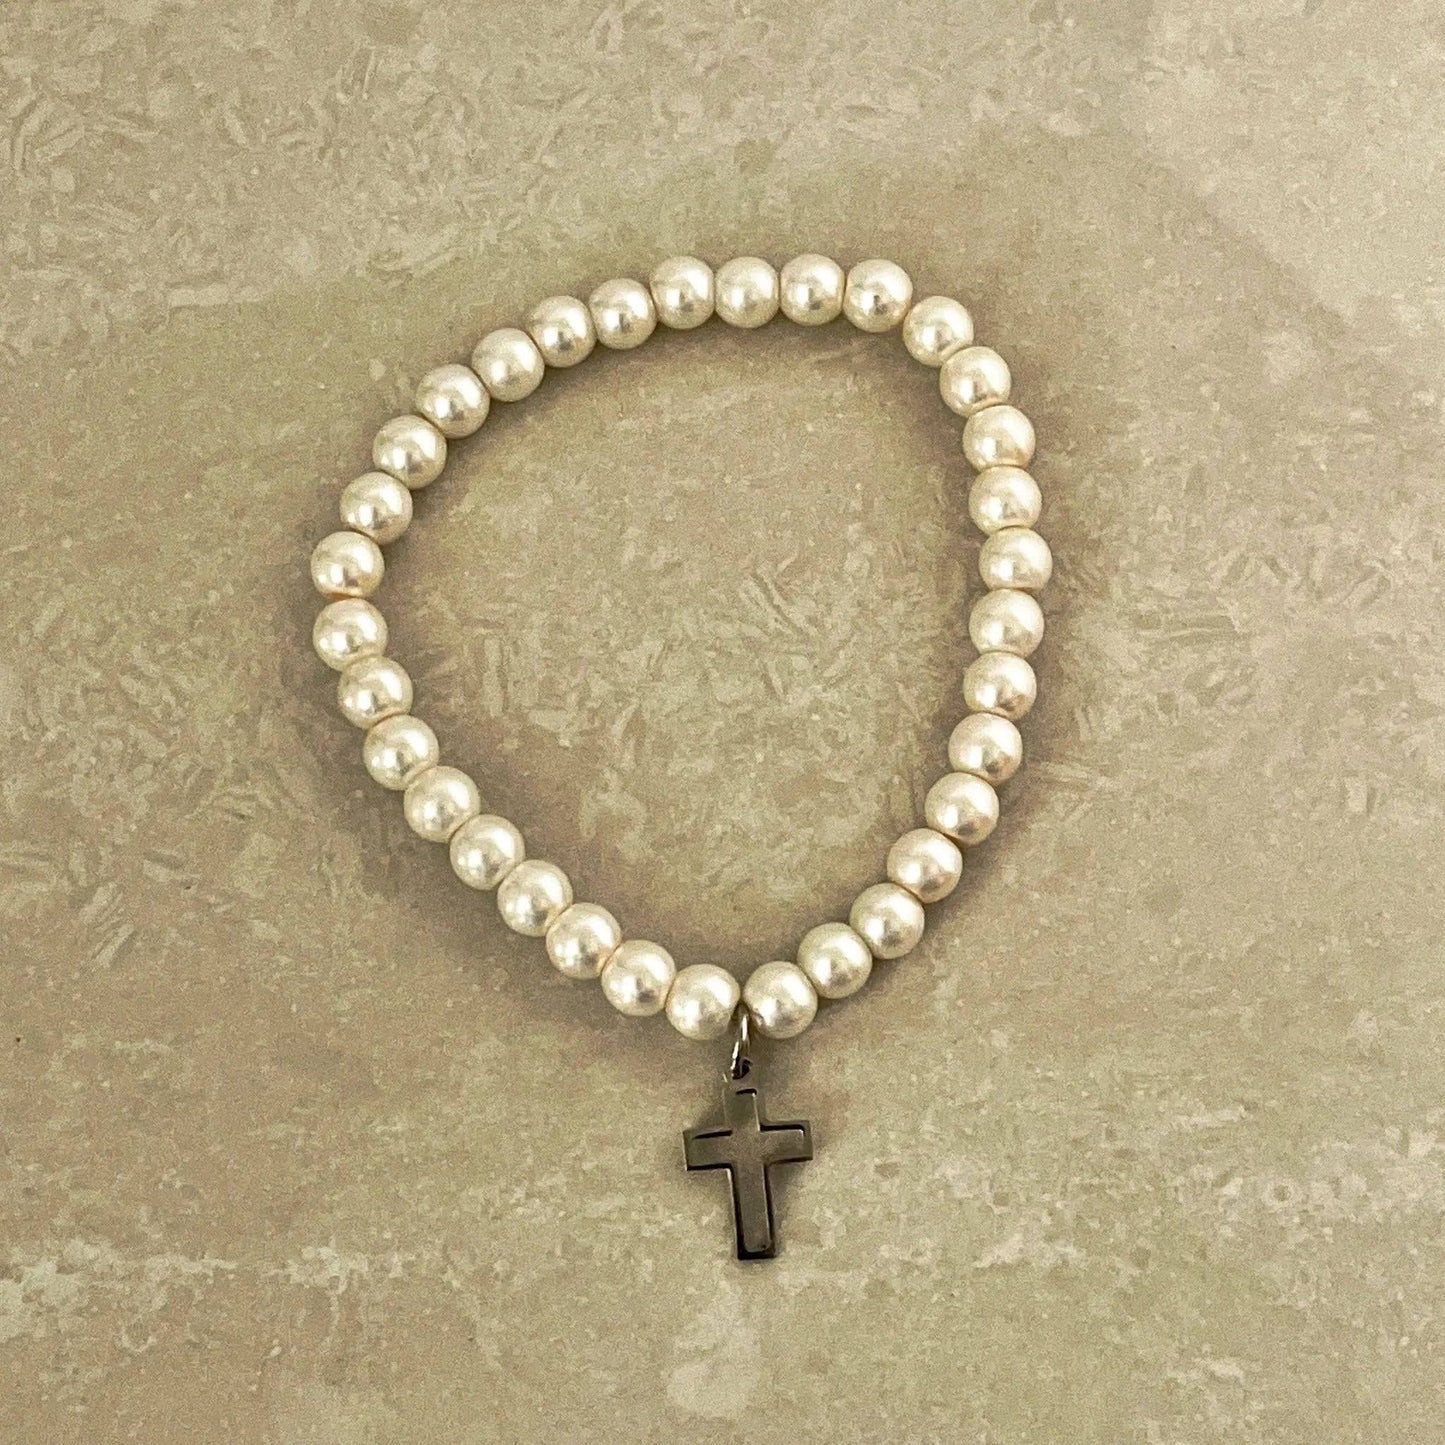 Cross (Faith) Charm Bracelet - Uplift Beads